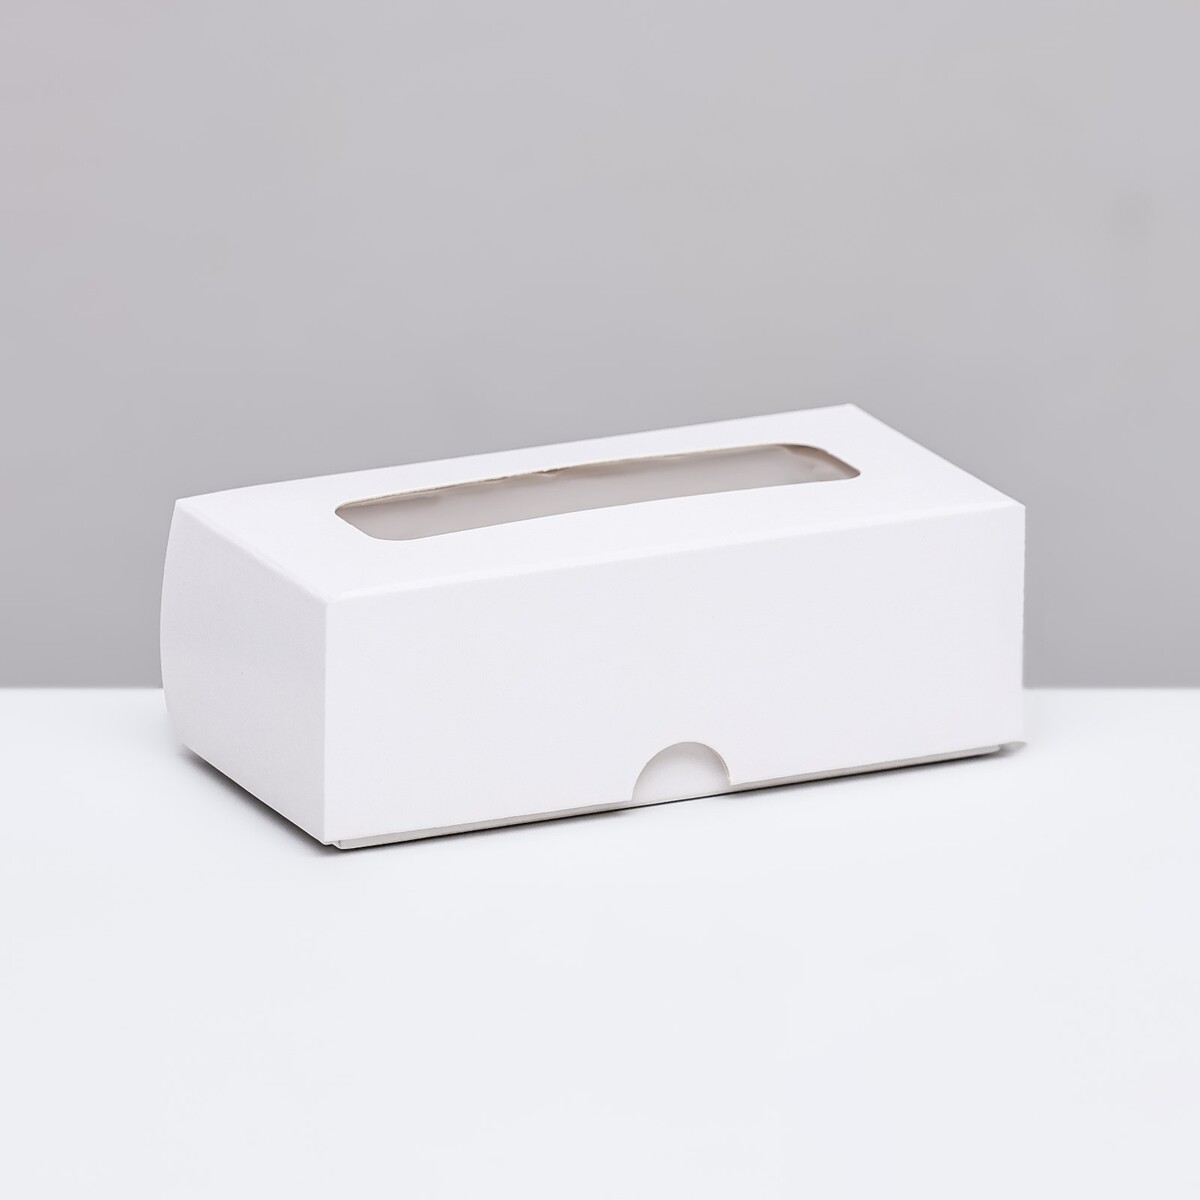 Коробка складная под 2 конфеты, белая, 5 х 10,5 х 3,5 см конфеты осенний вальс 250г ротфронт